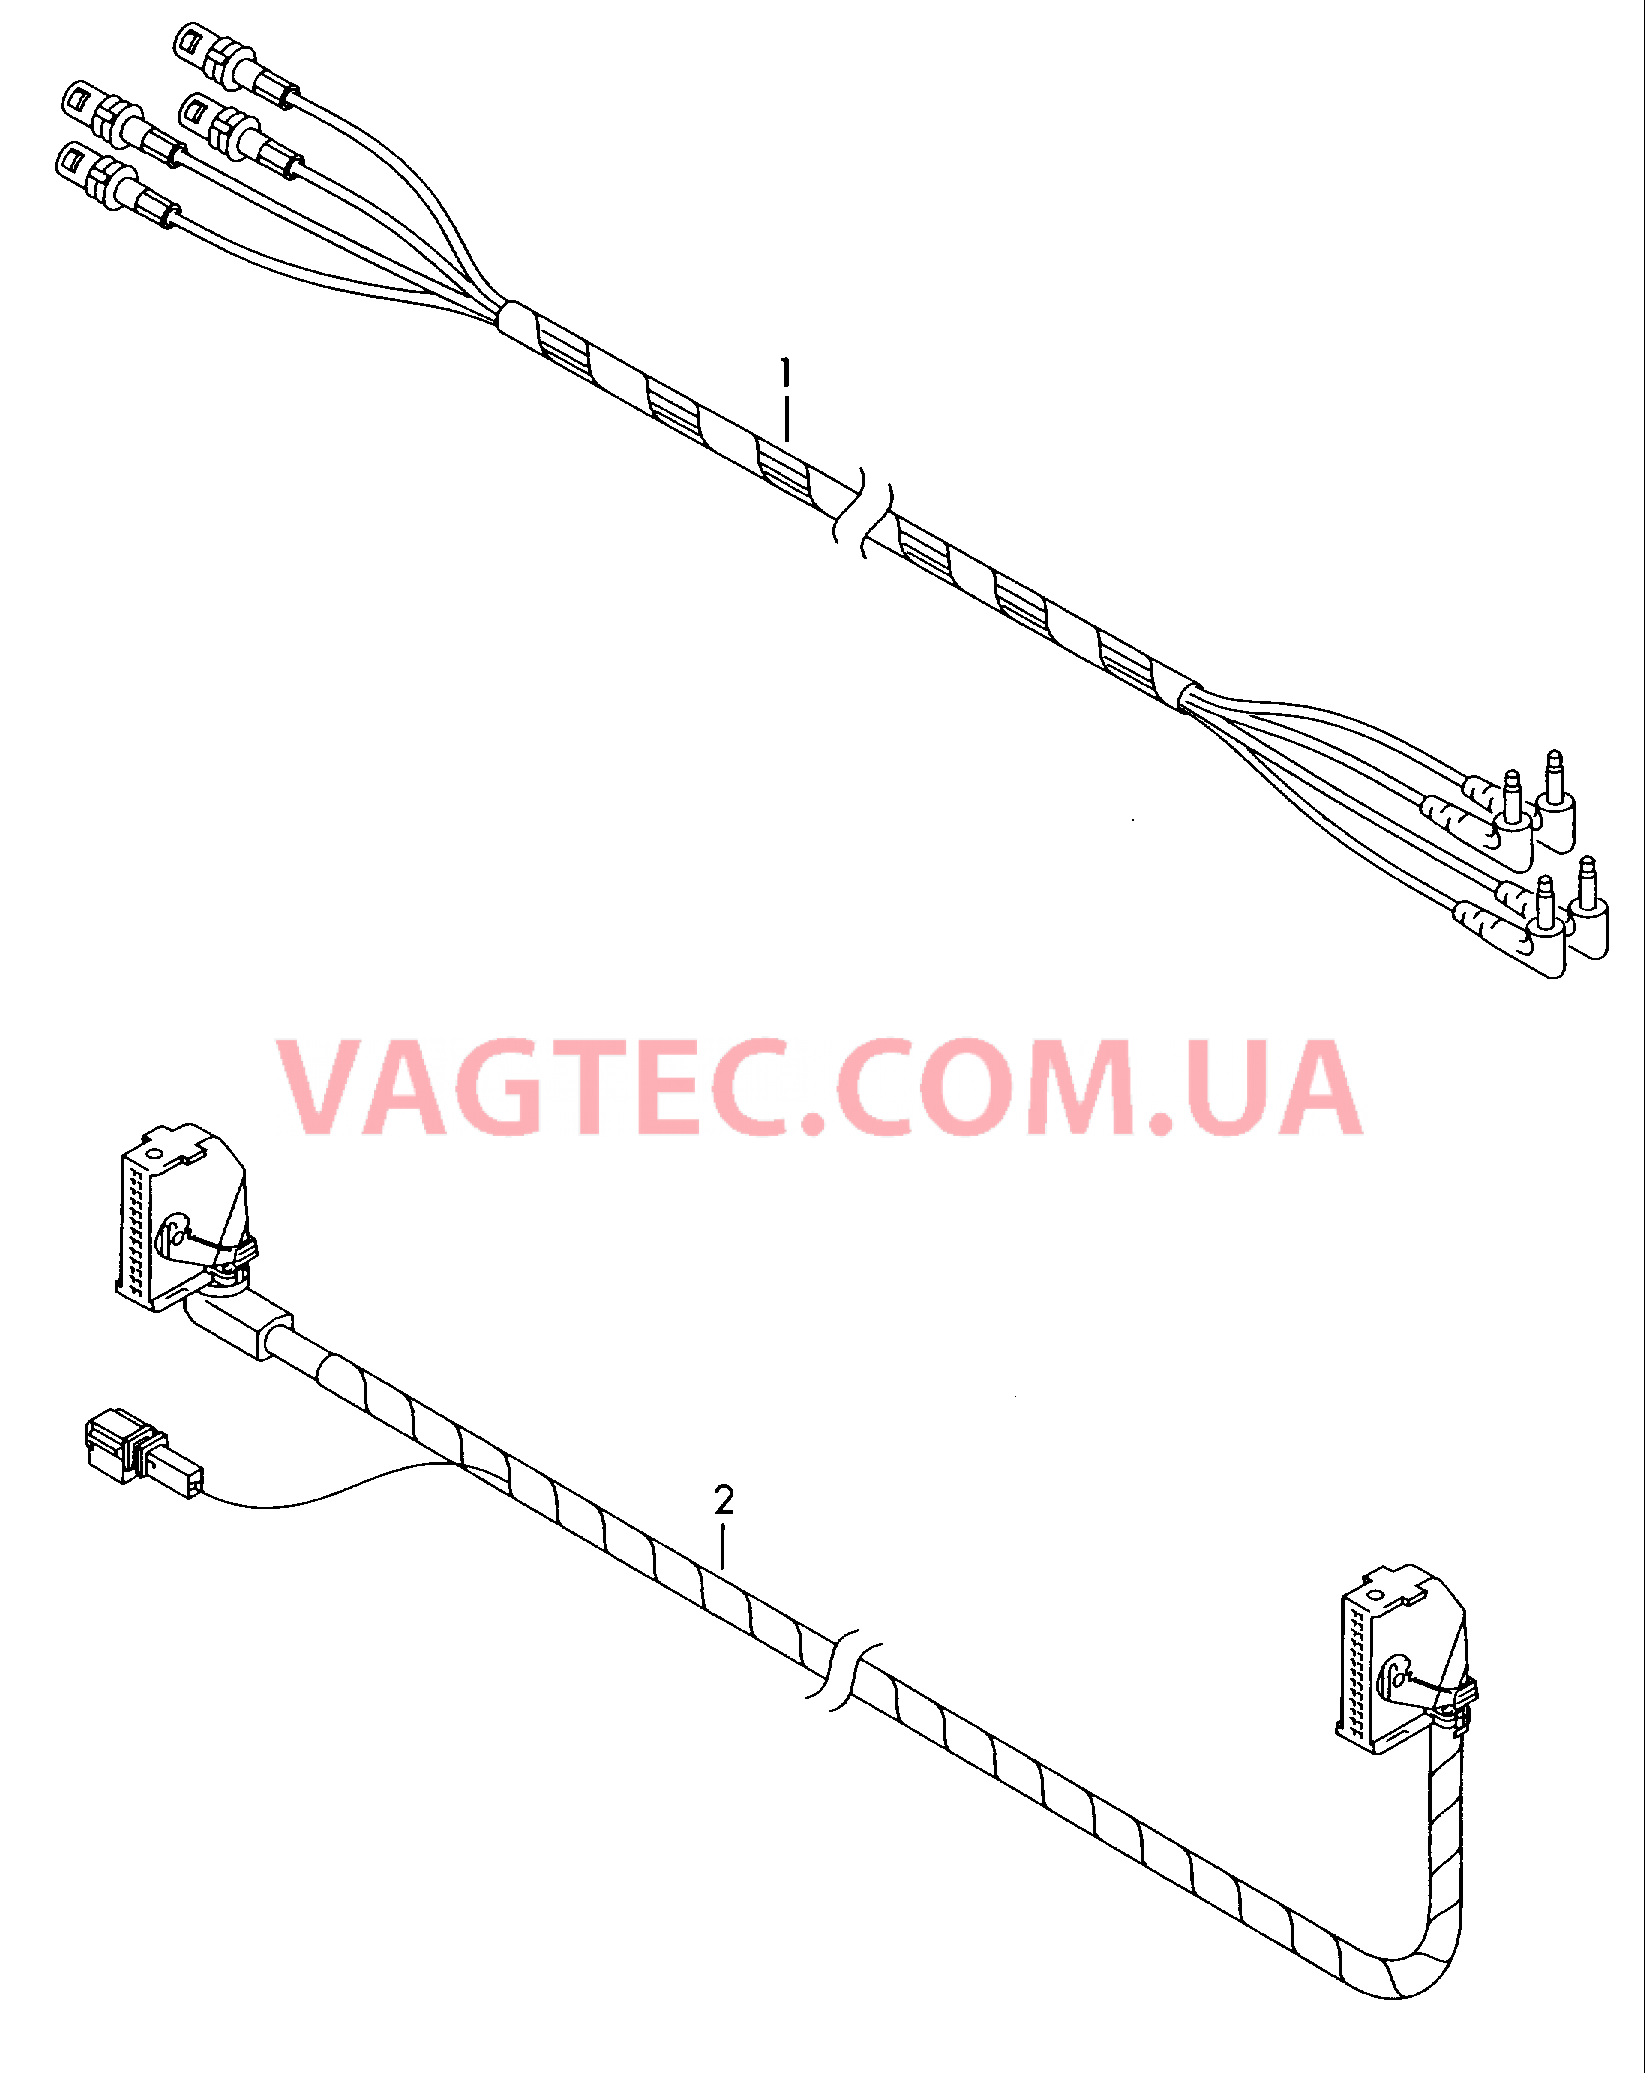 Жгут проводов системы навигации         также см. иллюстрацию:  для VOLKSWAGEN Passat 2000-1